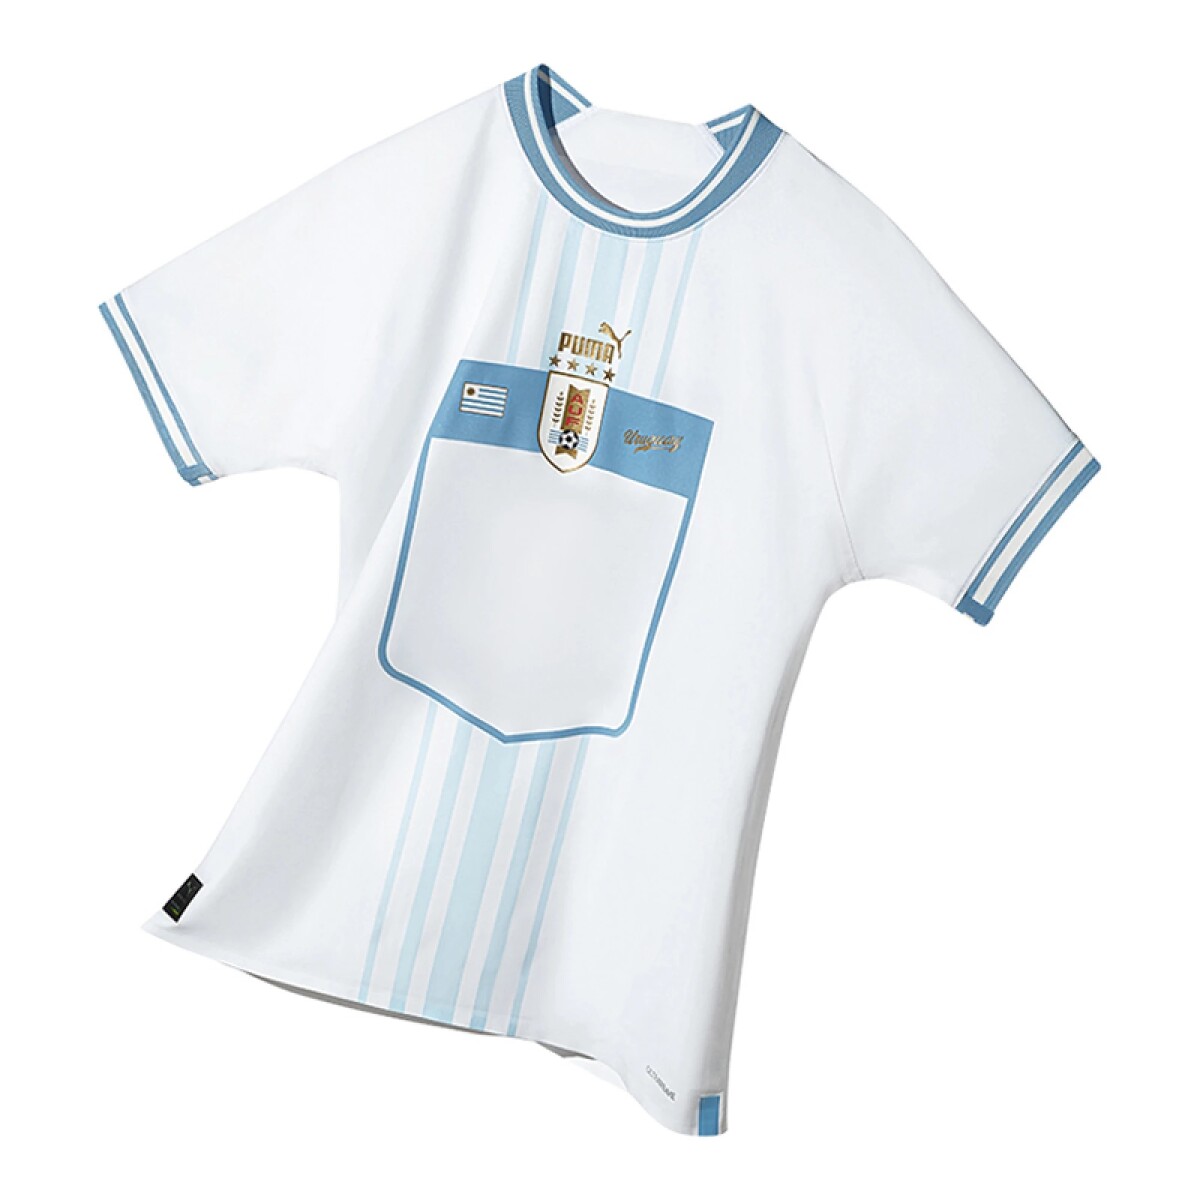 Camiseta Puma Uruguay Away 22 - S/C 